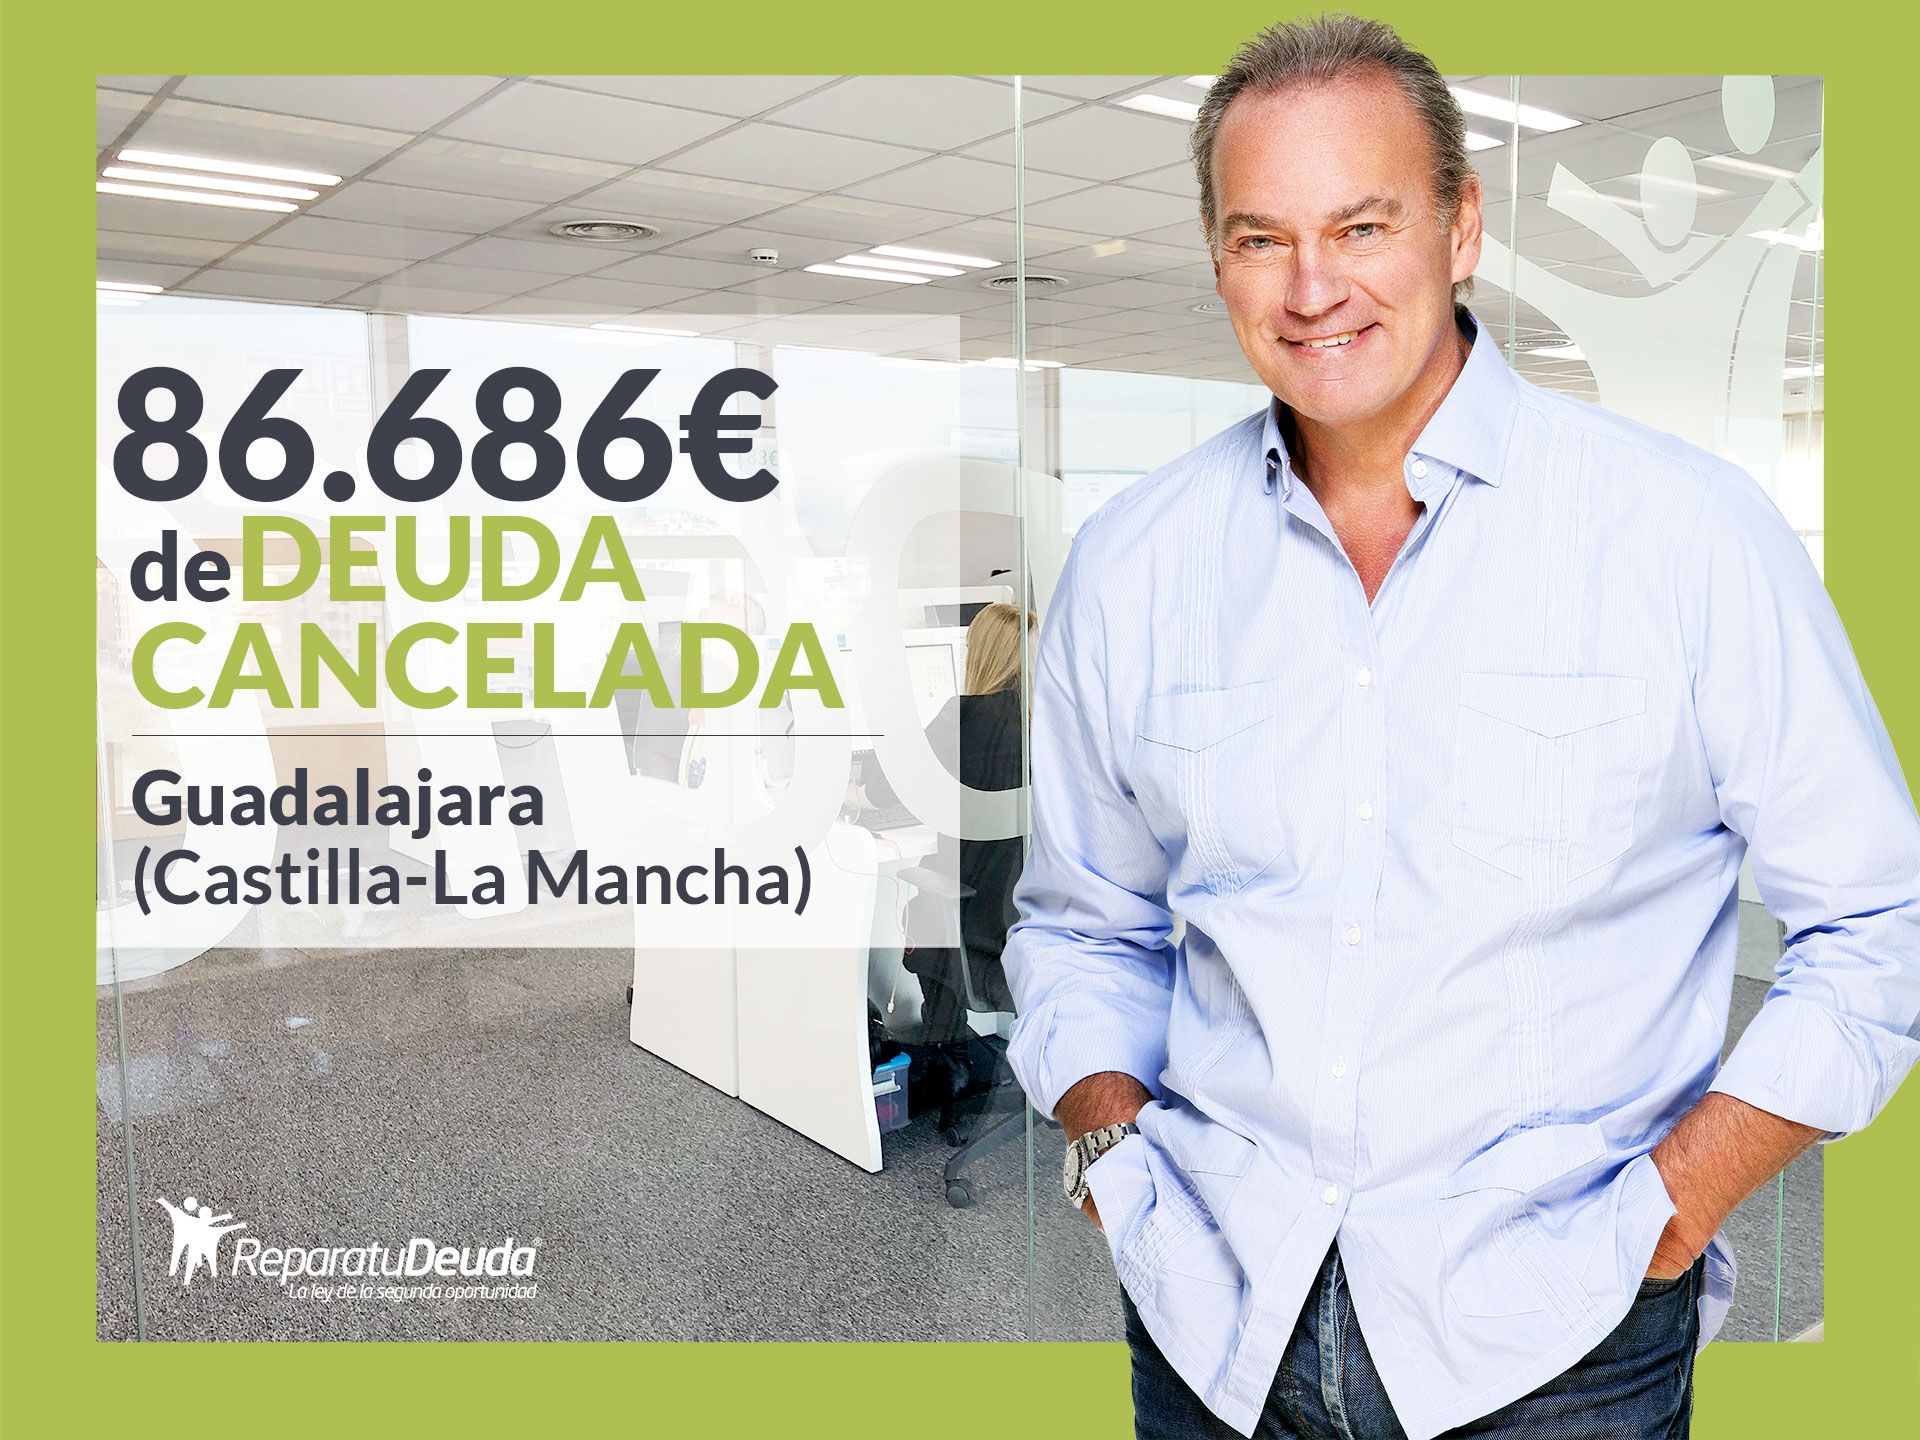 Repara tu Deuda cancela 86.686? en Guadalajara (Castilla-La Mancha) con la Ley de Segunda Oportunidad